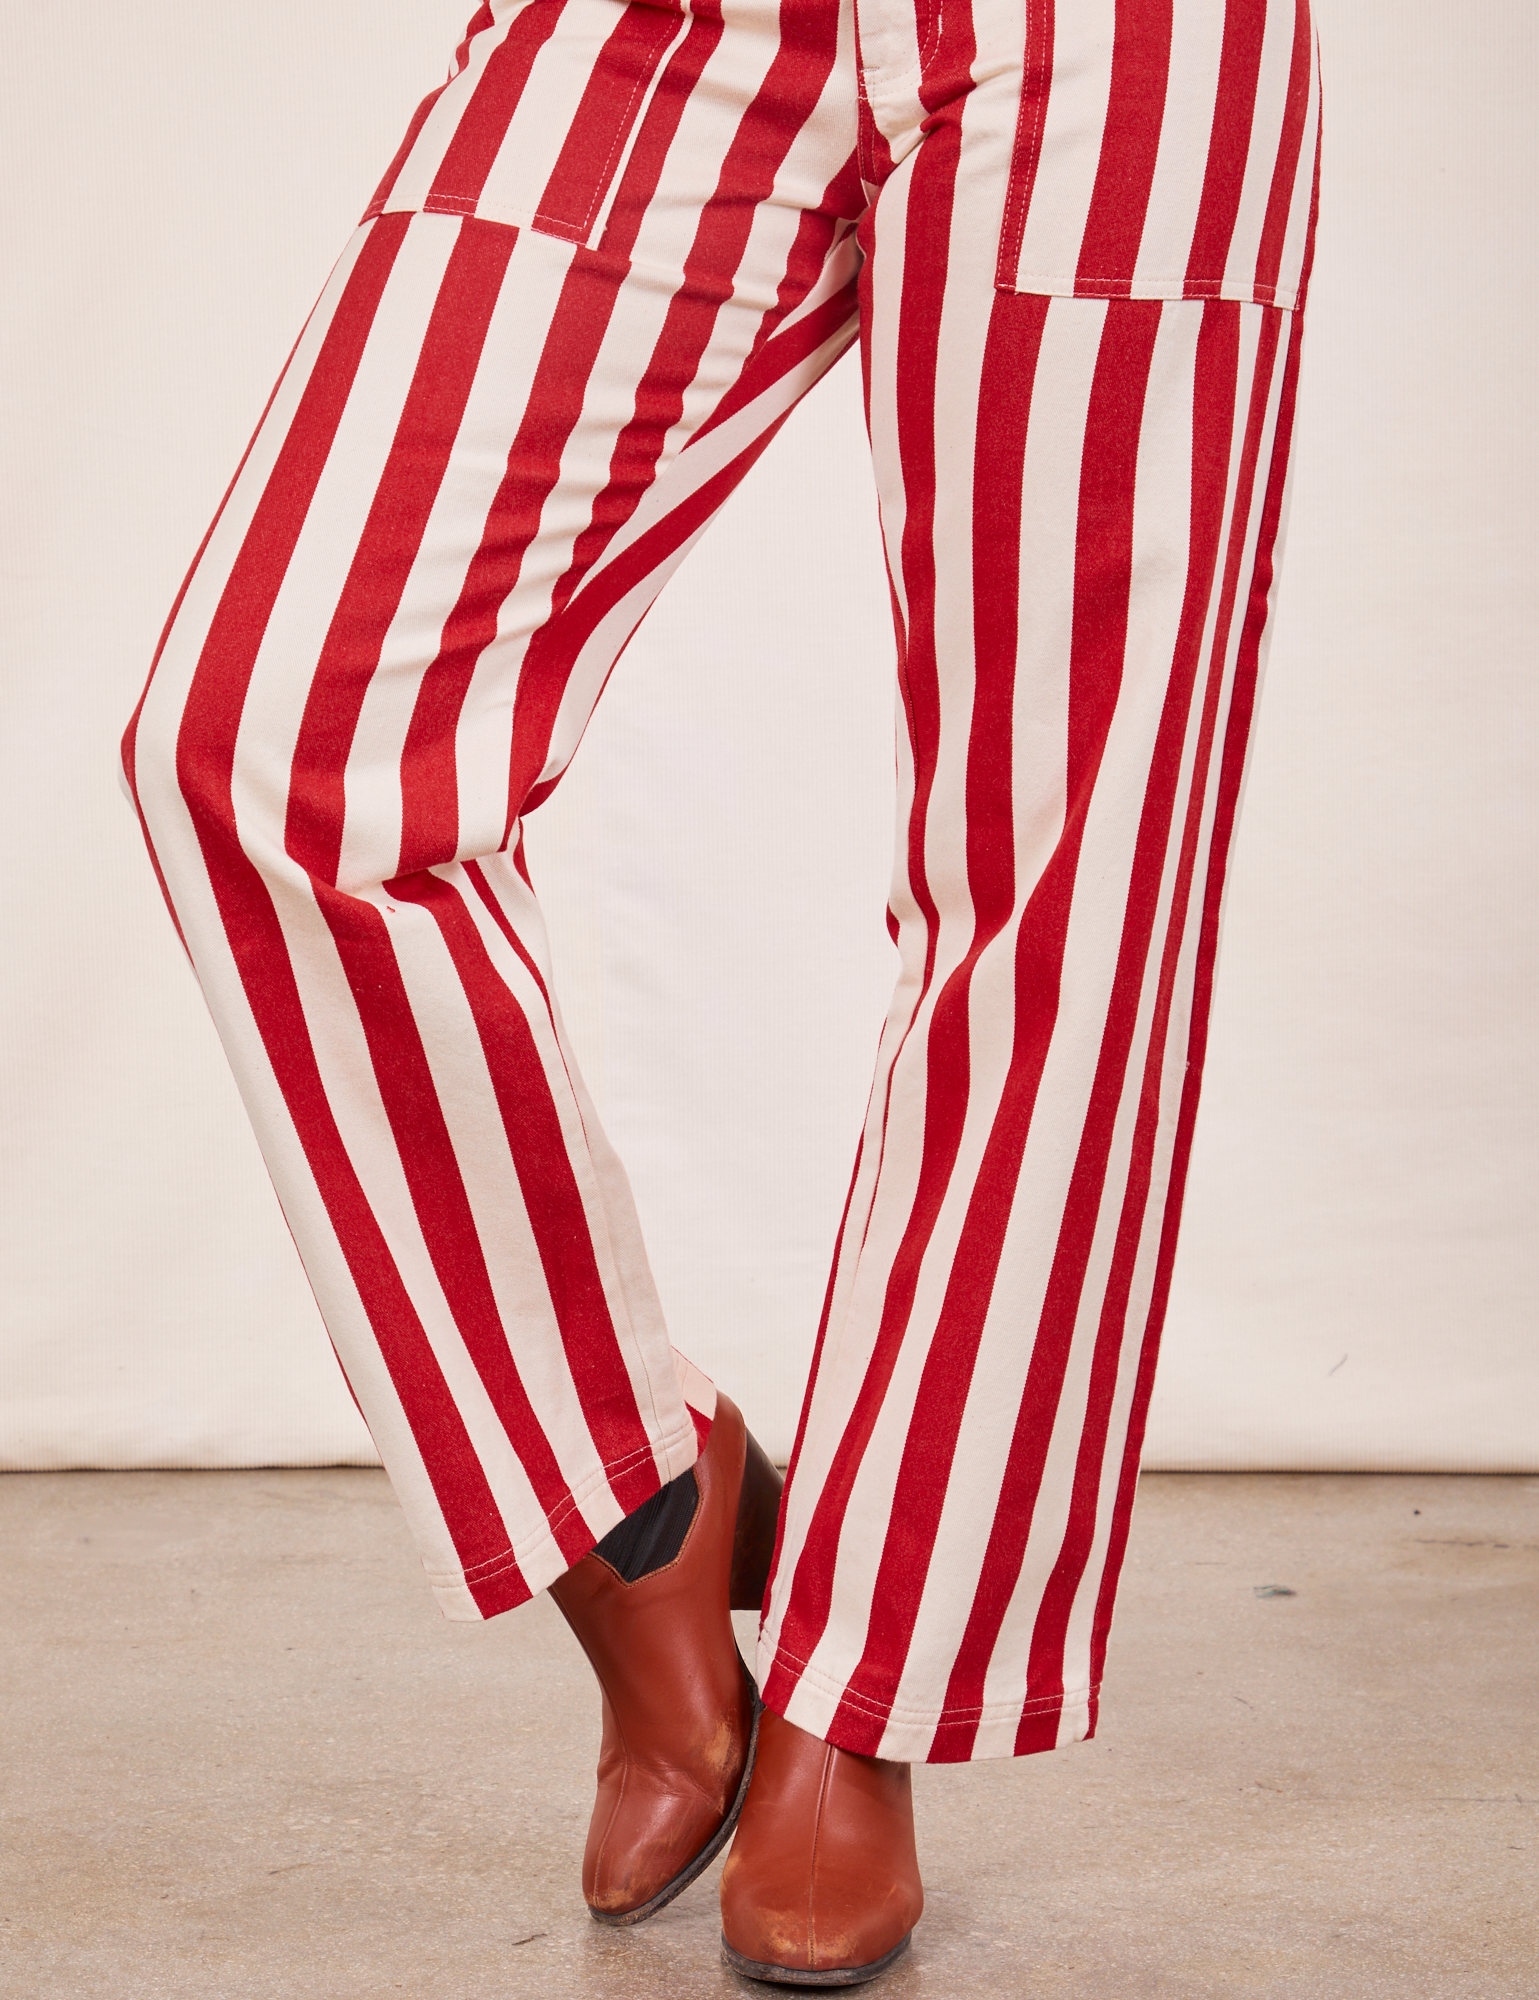 Work Pants in Cherry Stripe pant leg close up on Tiara